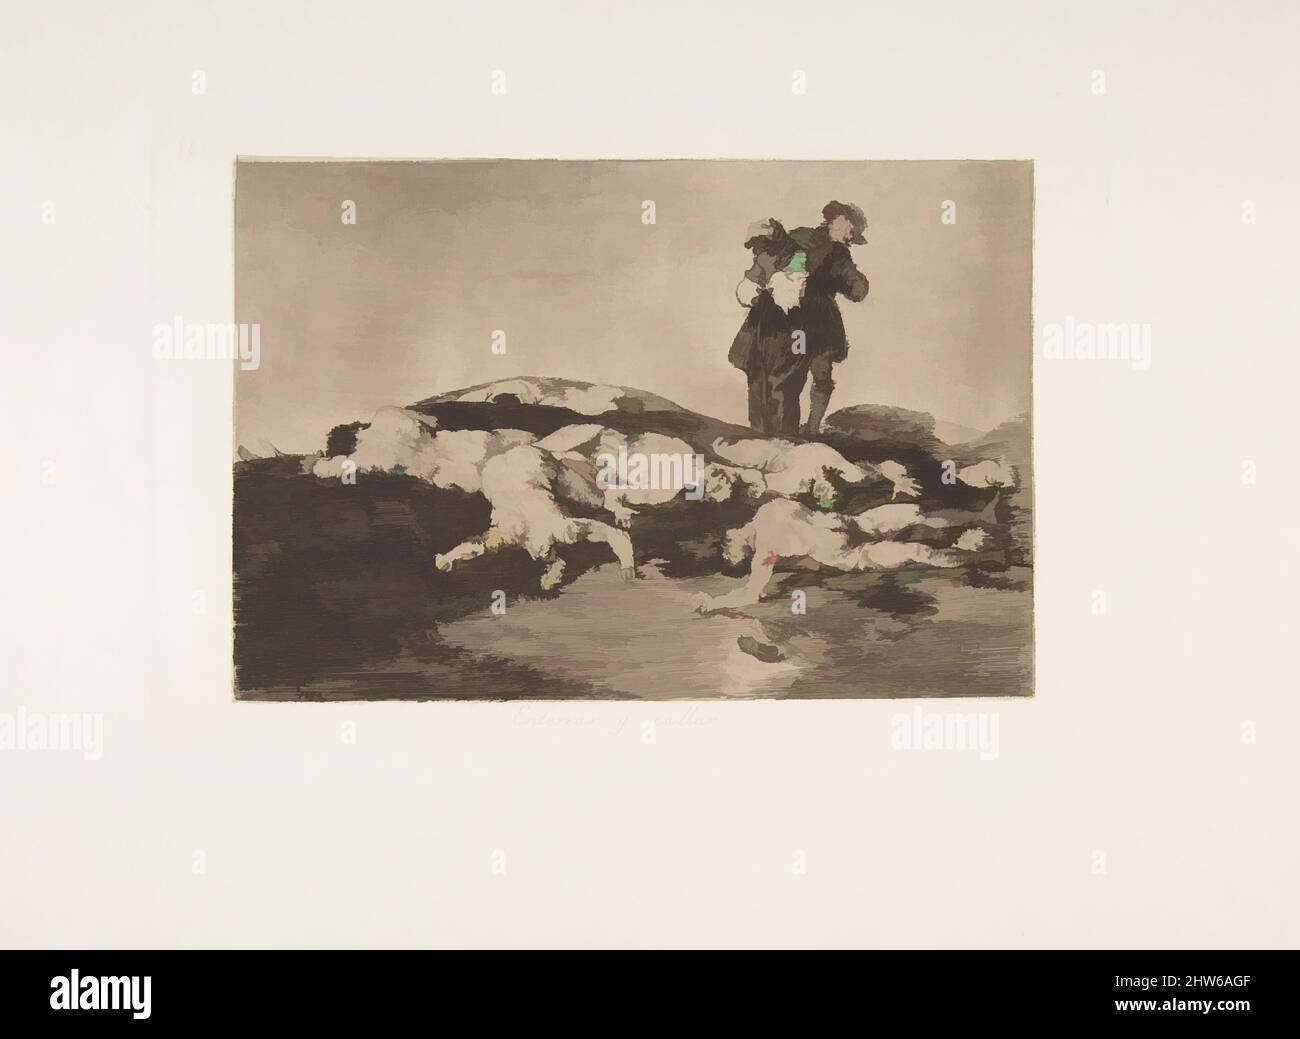 Art inspiré par la planche 18 de 'les désastres de la guerre' (Los Desastres de la Guerra): 'Les enterrer et garder le calme' (Enterrar y calar), 1810 (publié en 1863), Etching, brunie de la lave, le point sec et le burin, Plaque : 6 5/16 × 9 1/4 po (16 × 23,5 cm), Prints, Goya (Francisco de Goya y Lucientes, oeuvres classiques modernisées par Artotop avec une touche de modernité. Formes, couleur et valeur, impact visuel accrocheur sur l'art émotions par la liberté d'œuvres d'art d'une manière contemporaine. Un message intemporel qui cherche une nouvelle direction créative. Artistes qui se tournent vers le support numérique et créent le NFT Artotop Banque D'Images